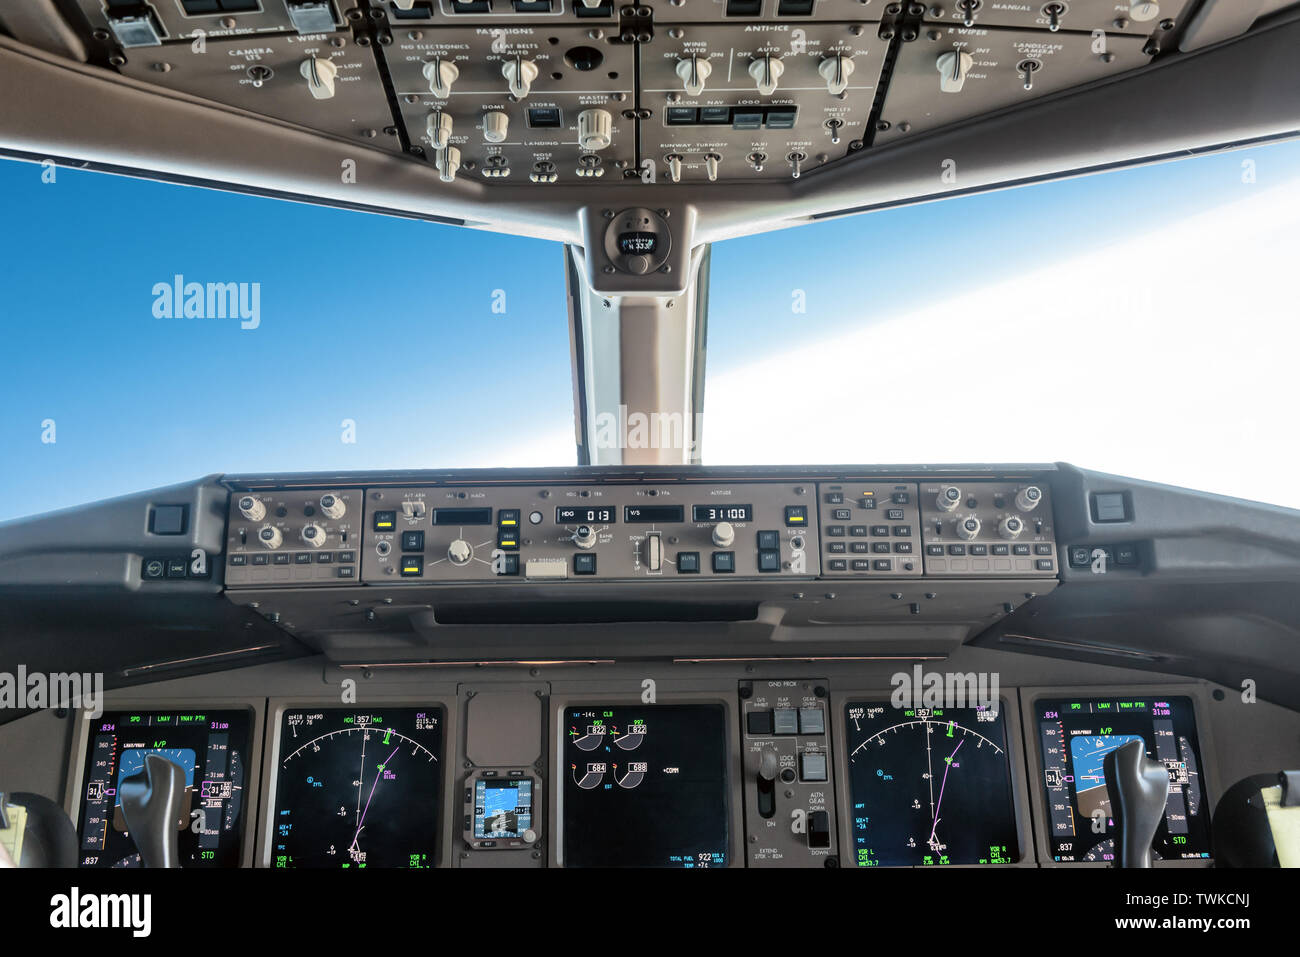 Dentro de una gran cabina de avión vuelo jet autopilot, girando a la derecha Foto de stock